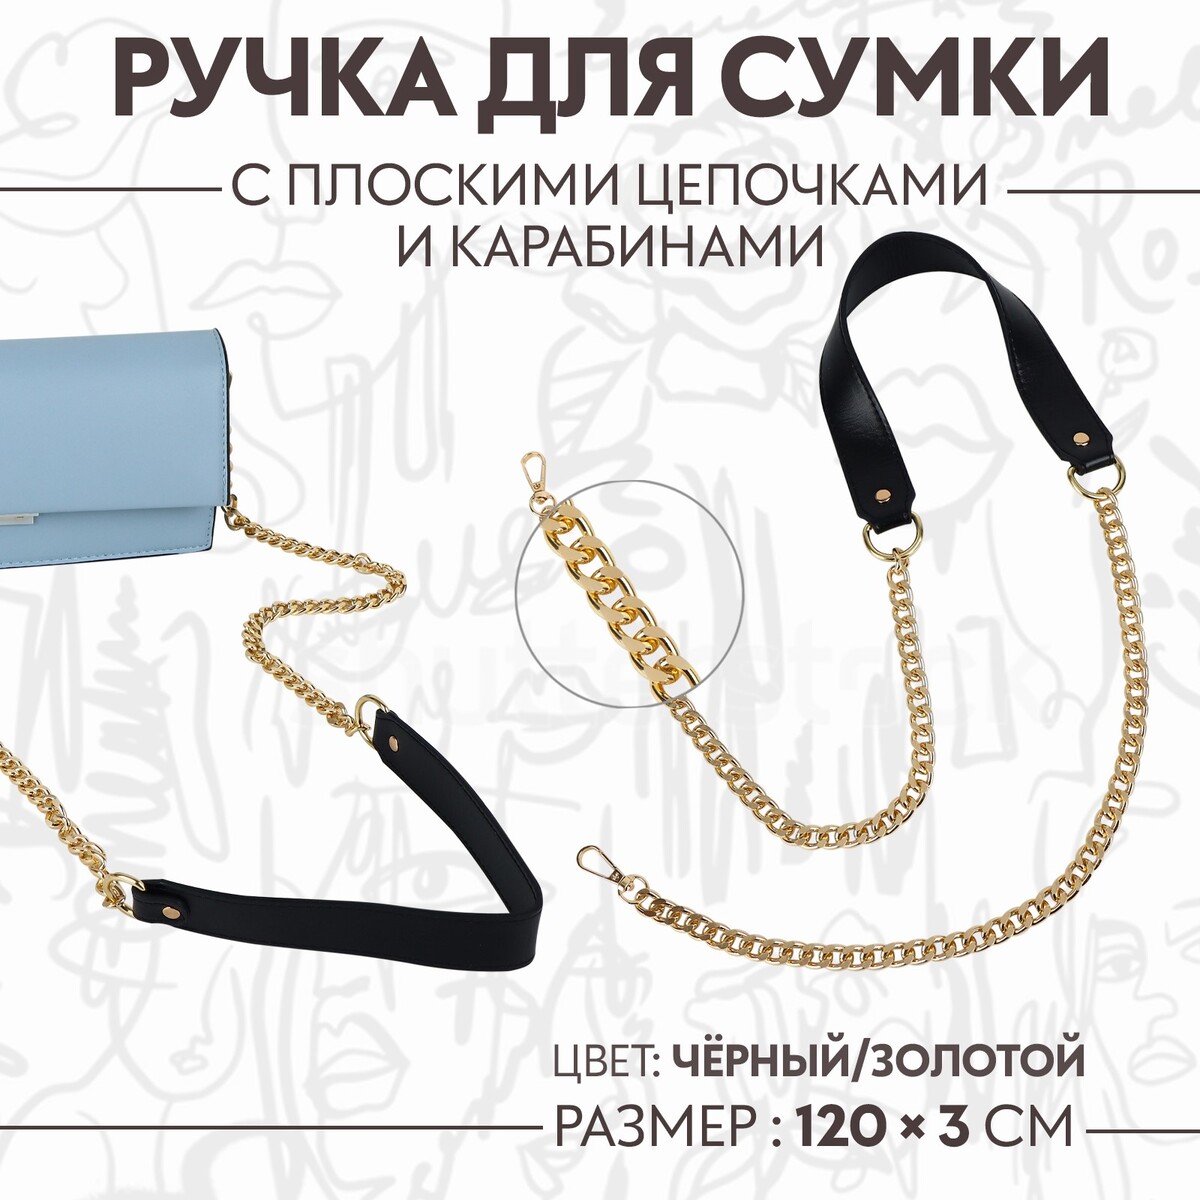 Ручка для сумки, с плоскими цепочками и карабинами, 120 × 3 см, цвет черный/золотой ручка для сумки с цепочками и карабинами 120 × 1 8 см